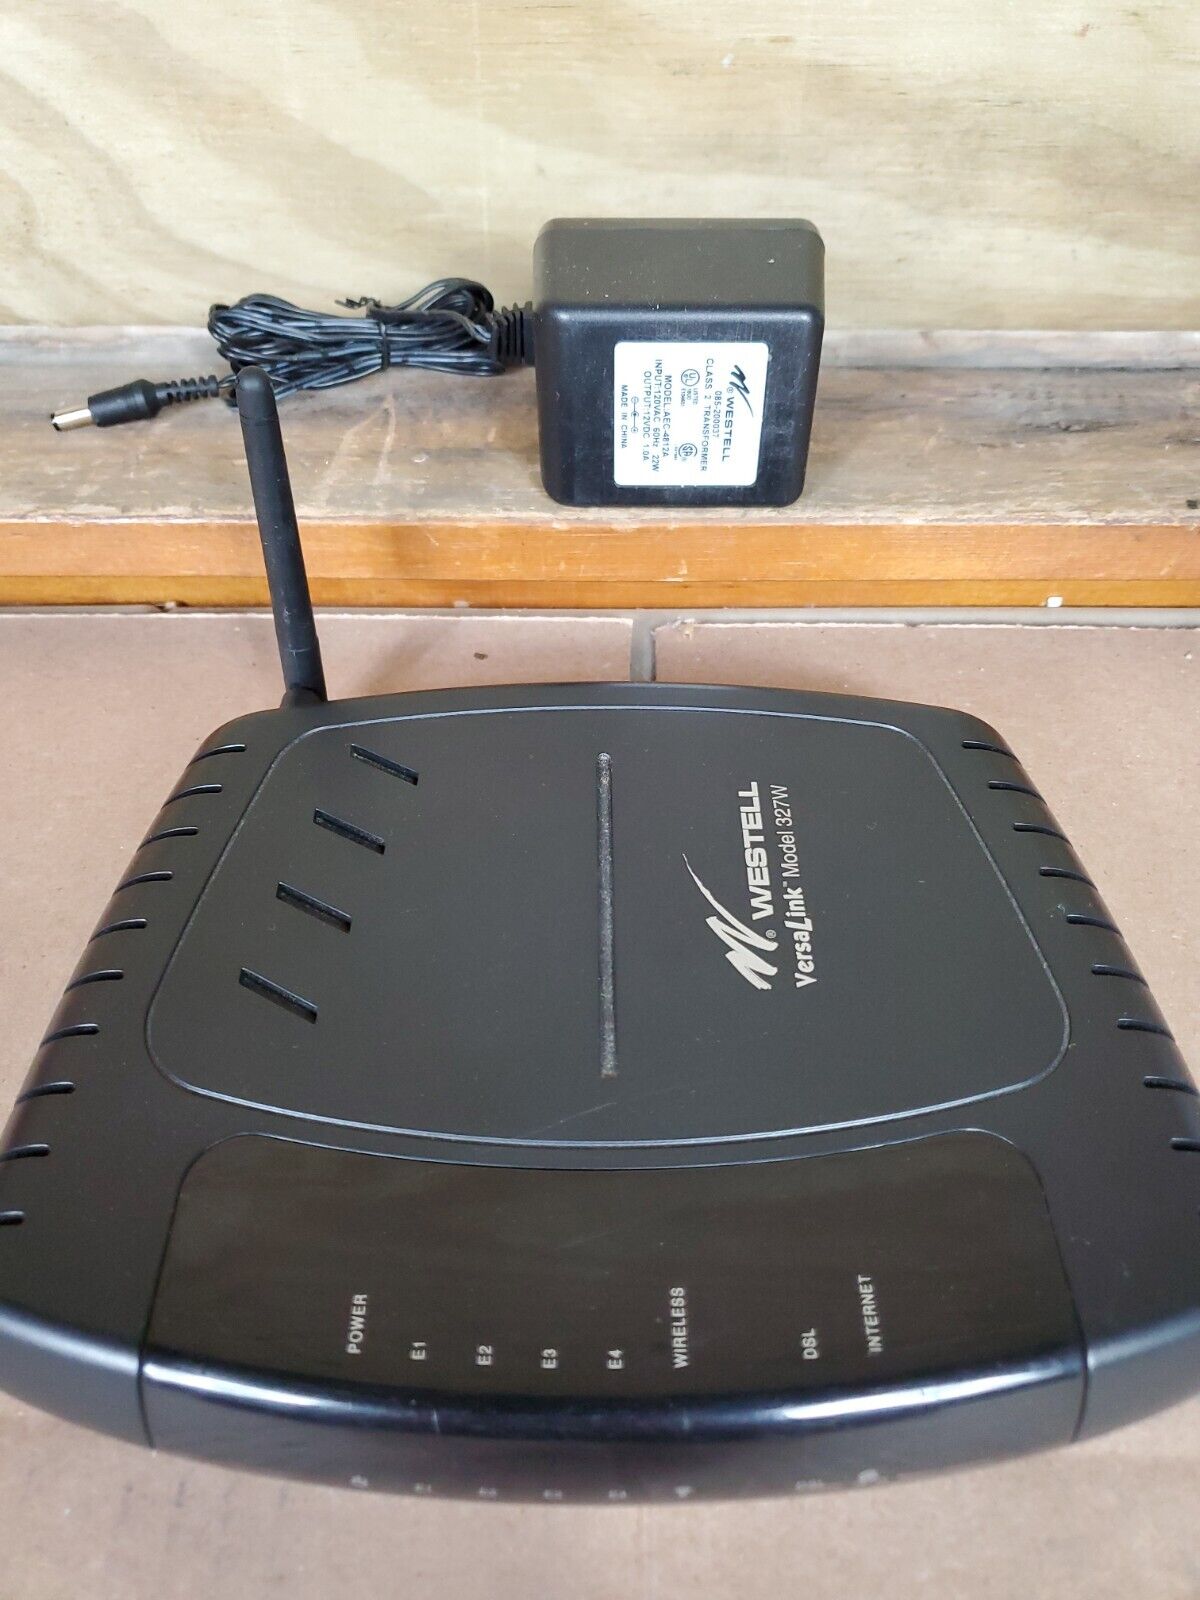 Westell VersaLink Model 327W Wireless Modem Gateway Router (B90-327W15-06)